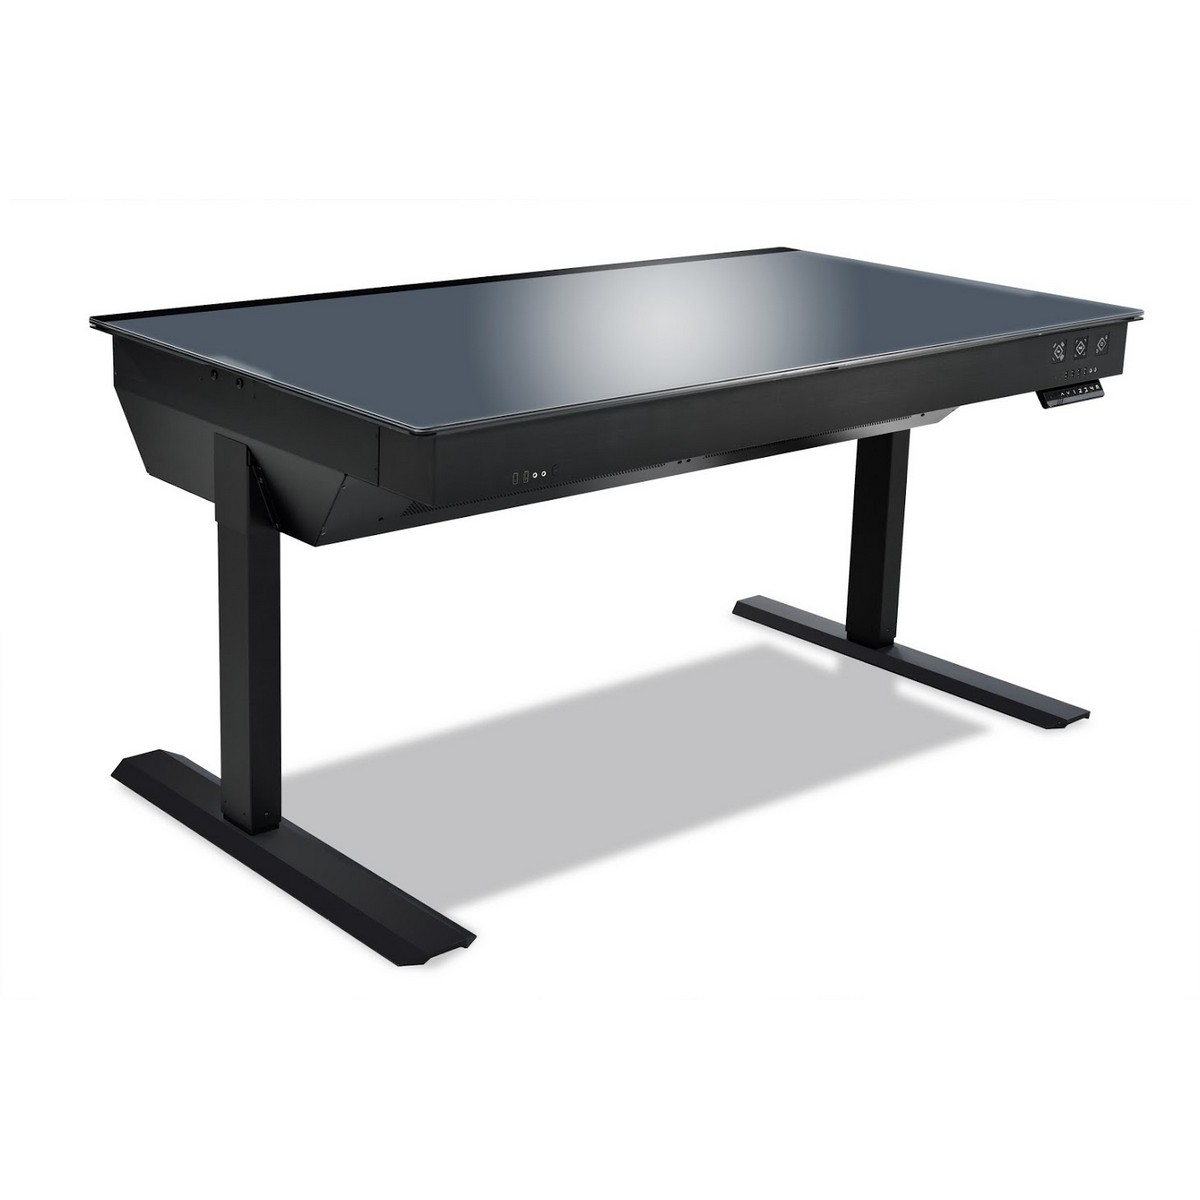 Lian Li DK-05F Electrical Height Adjustable Desk Case - Black